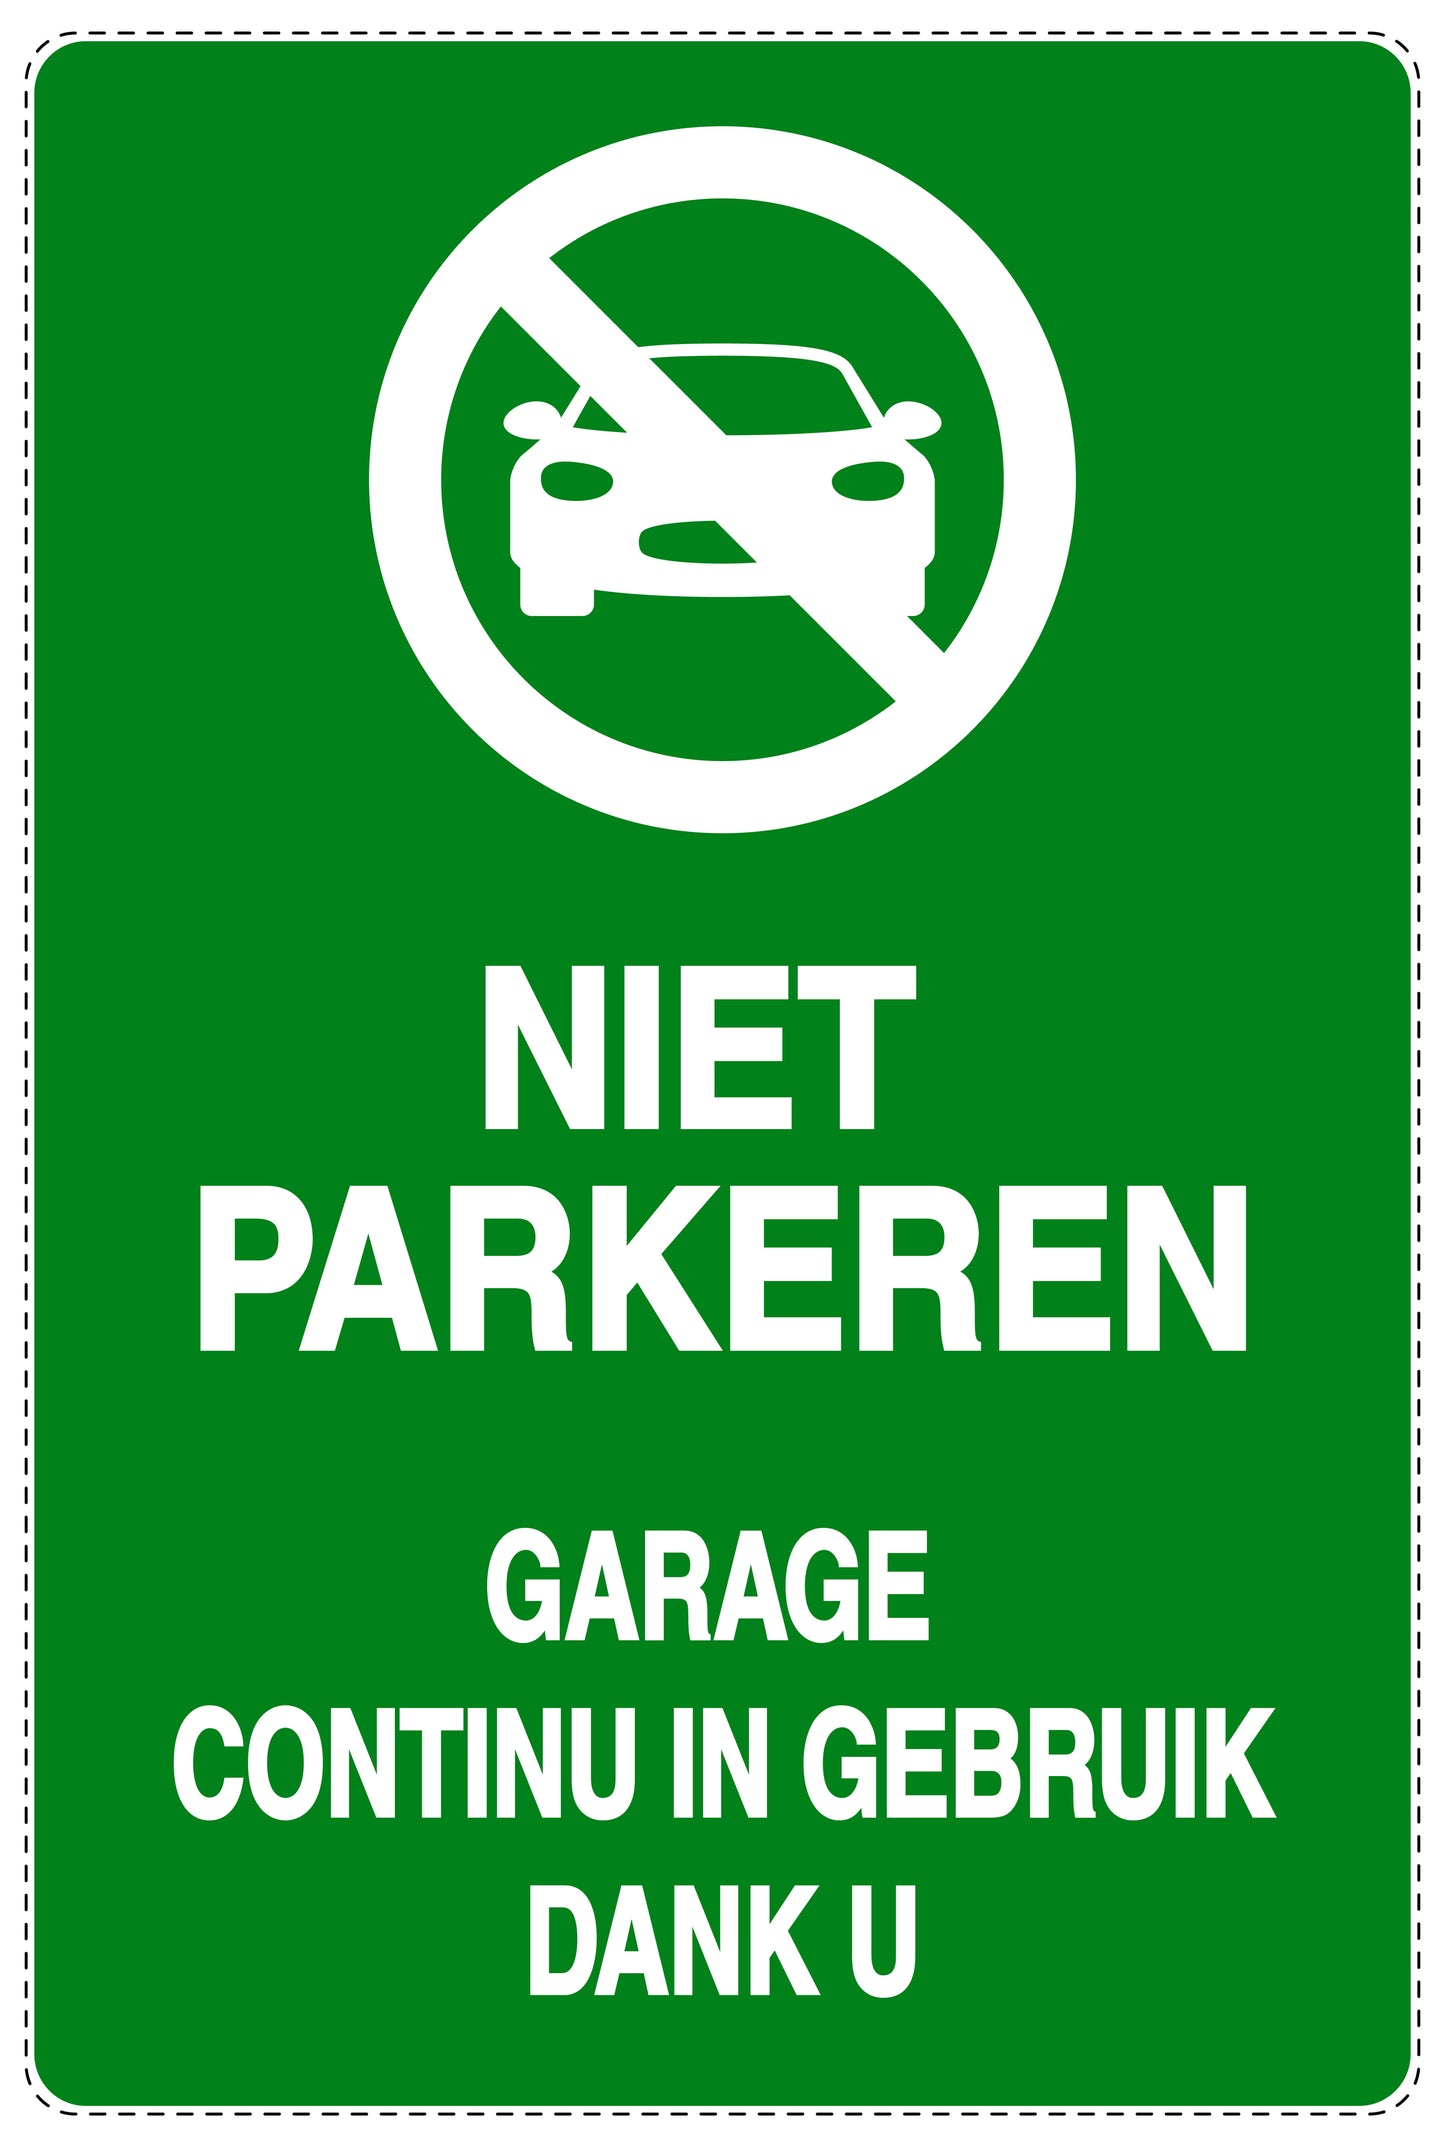 Niet parkeren Sticker "Niet parkeren garage continu in gebruik dank u" EW-NPRK-2130-54